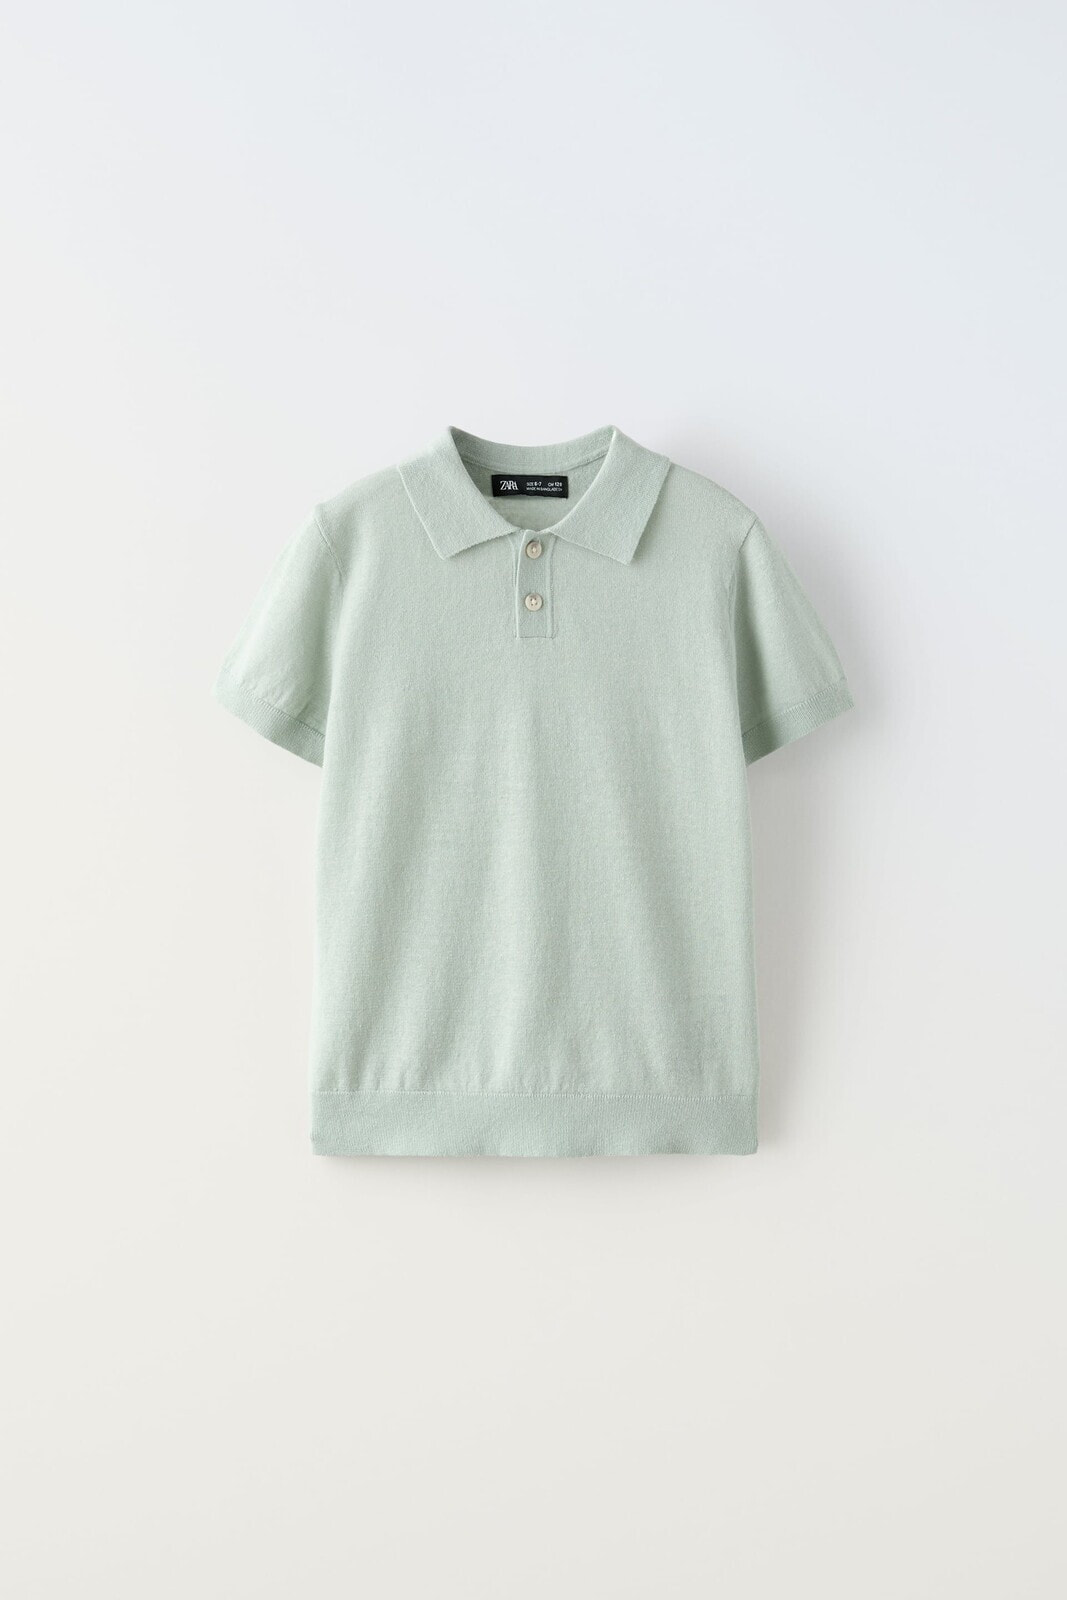 Linen blend knit polo shirt